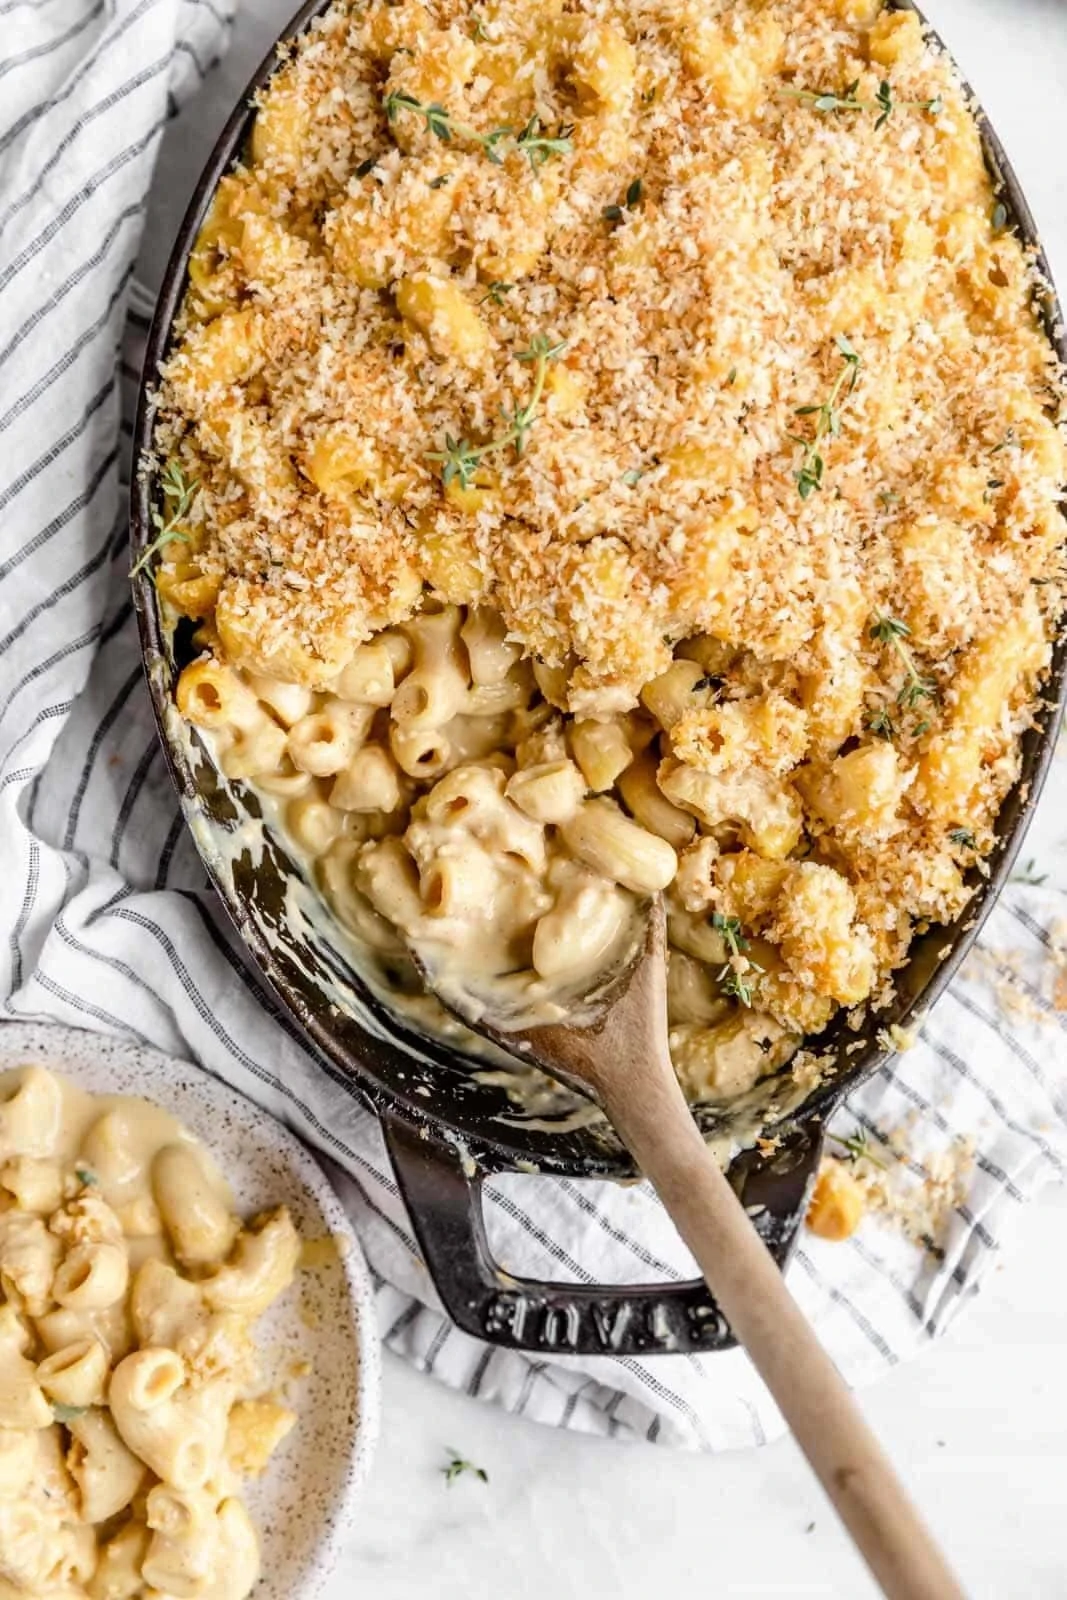 Vegan Mac And Cheese - The BEST Recipe!